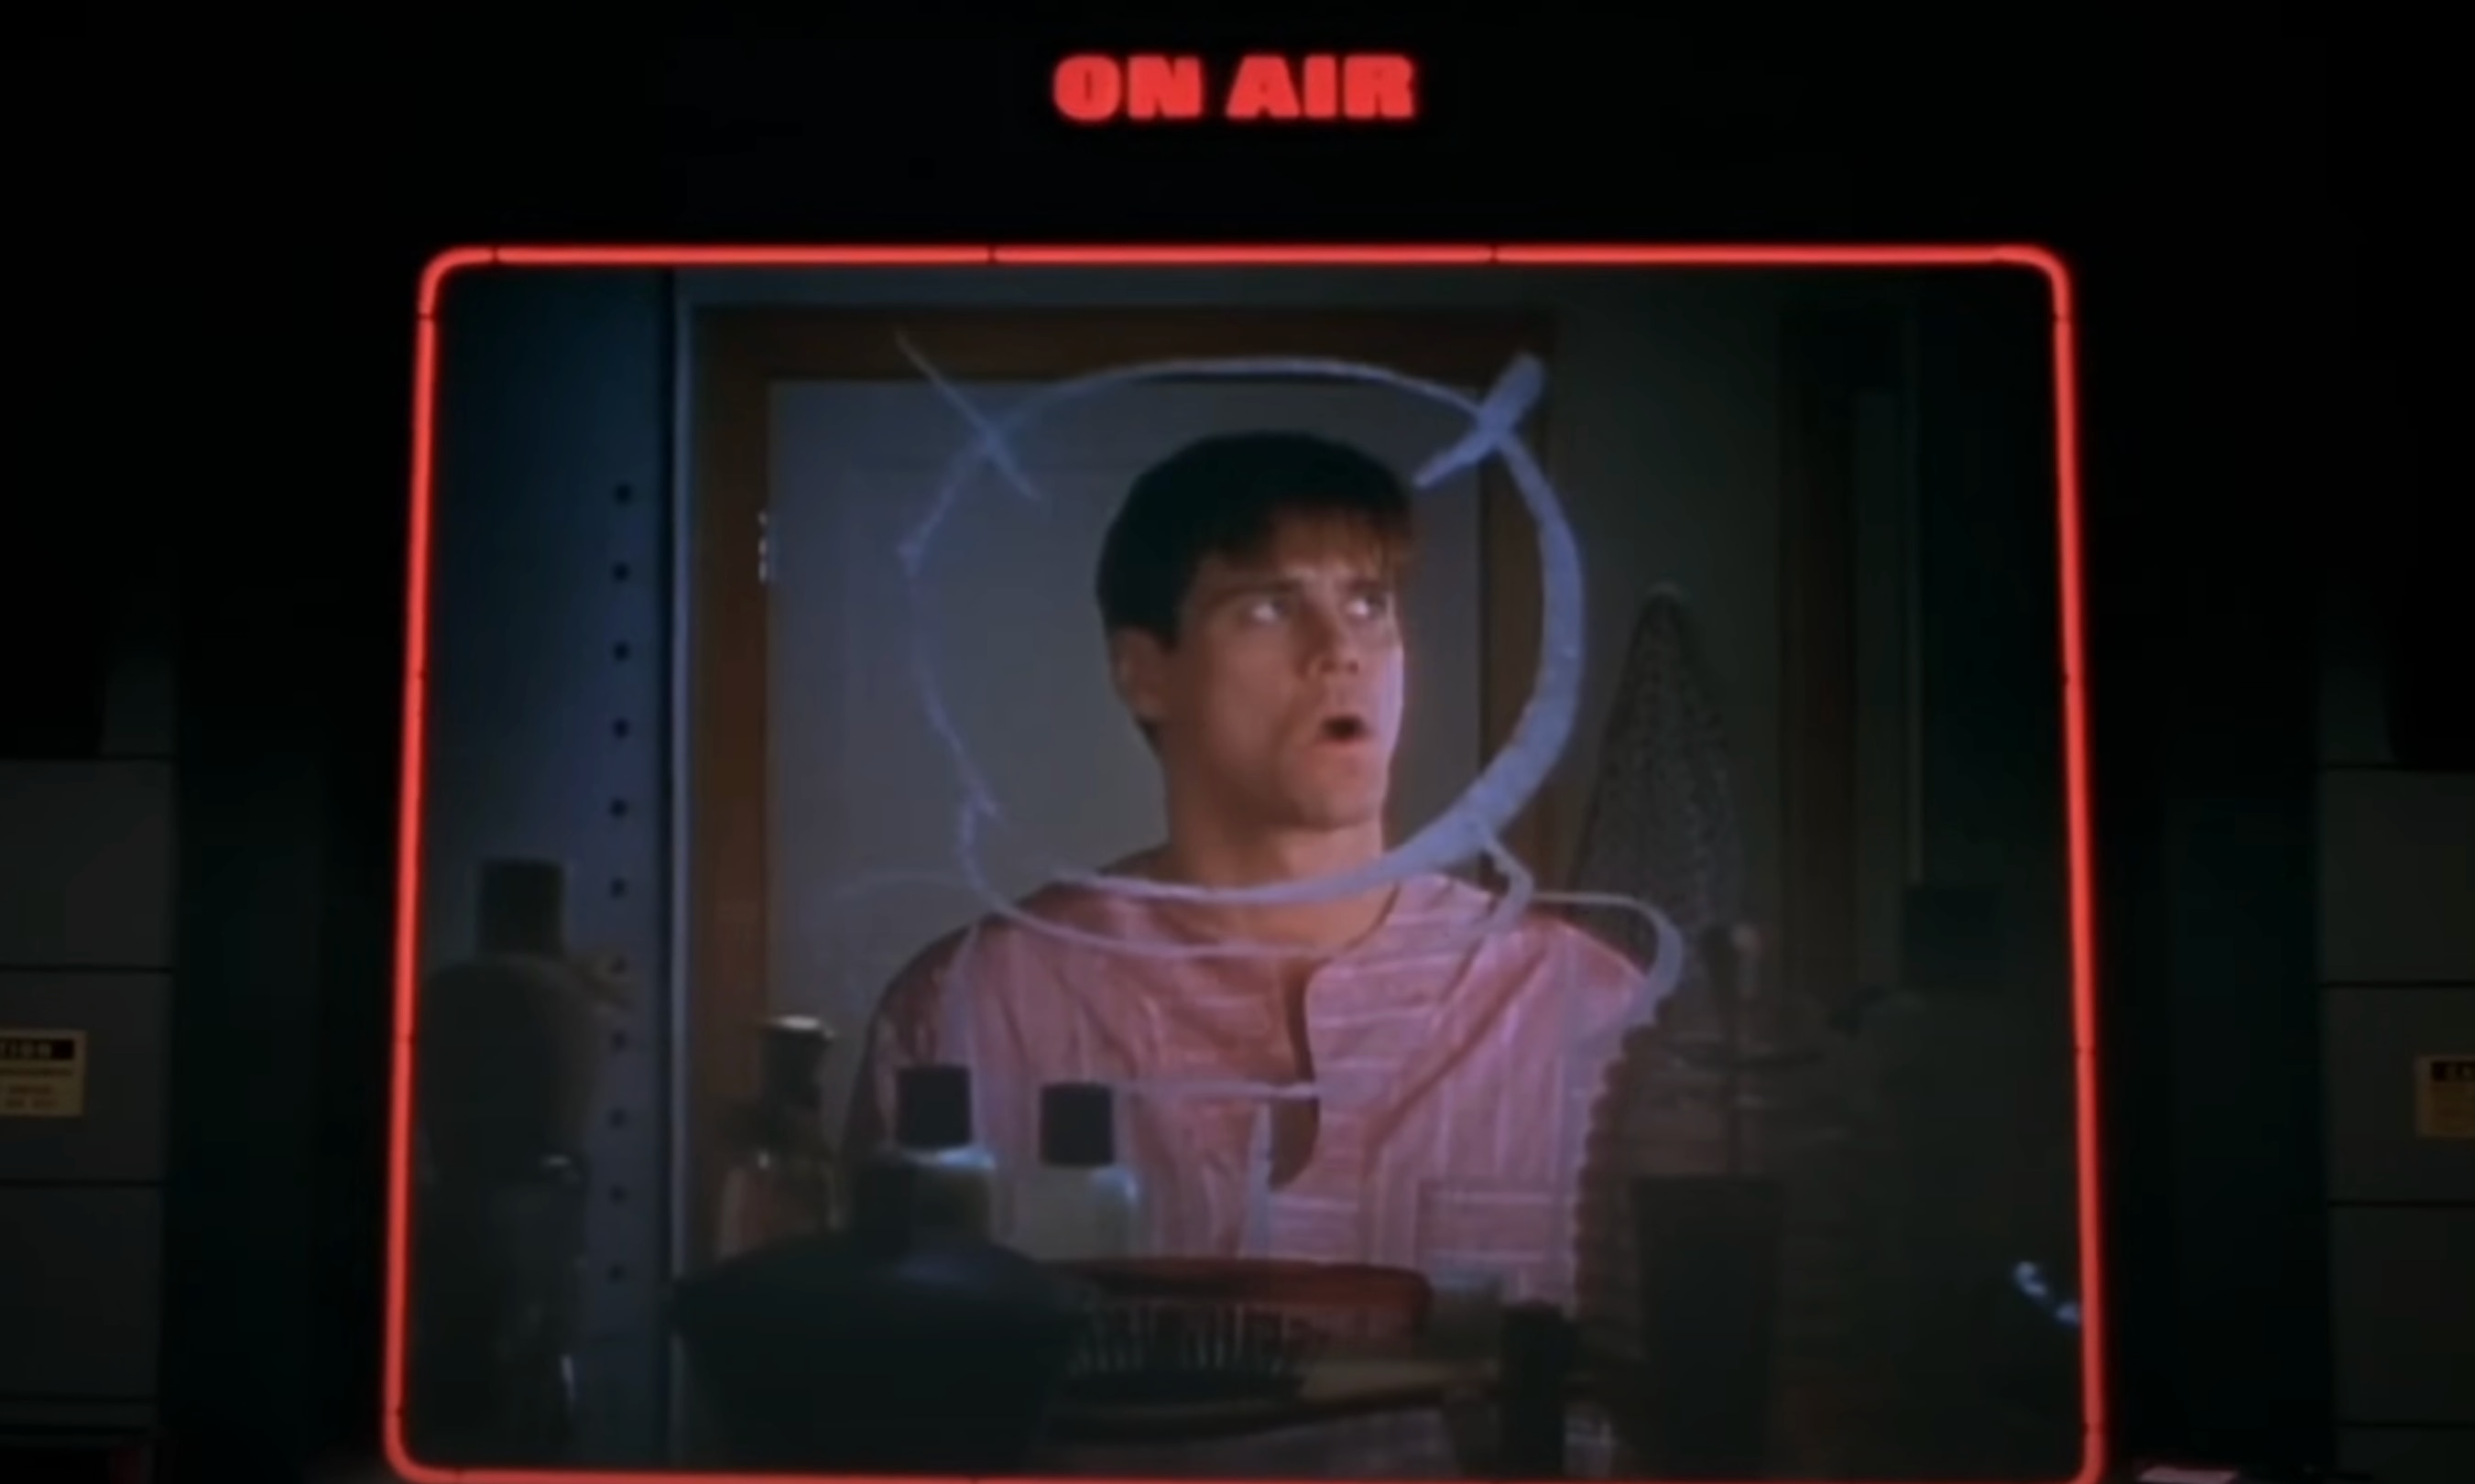 Truman Burbank (Jim Carrey) is seen through an "On Air" box in The Truman Show (1998).